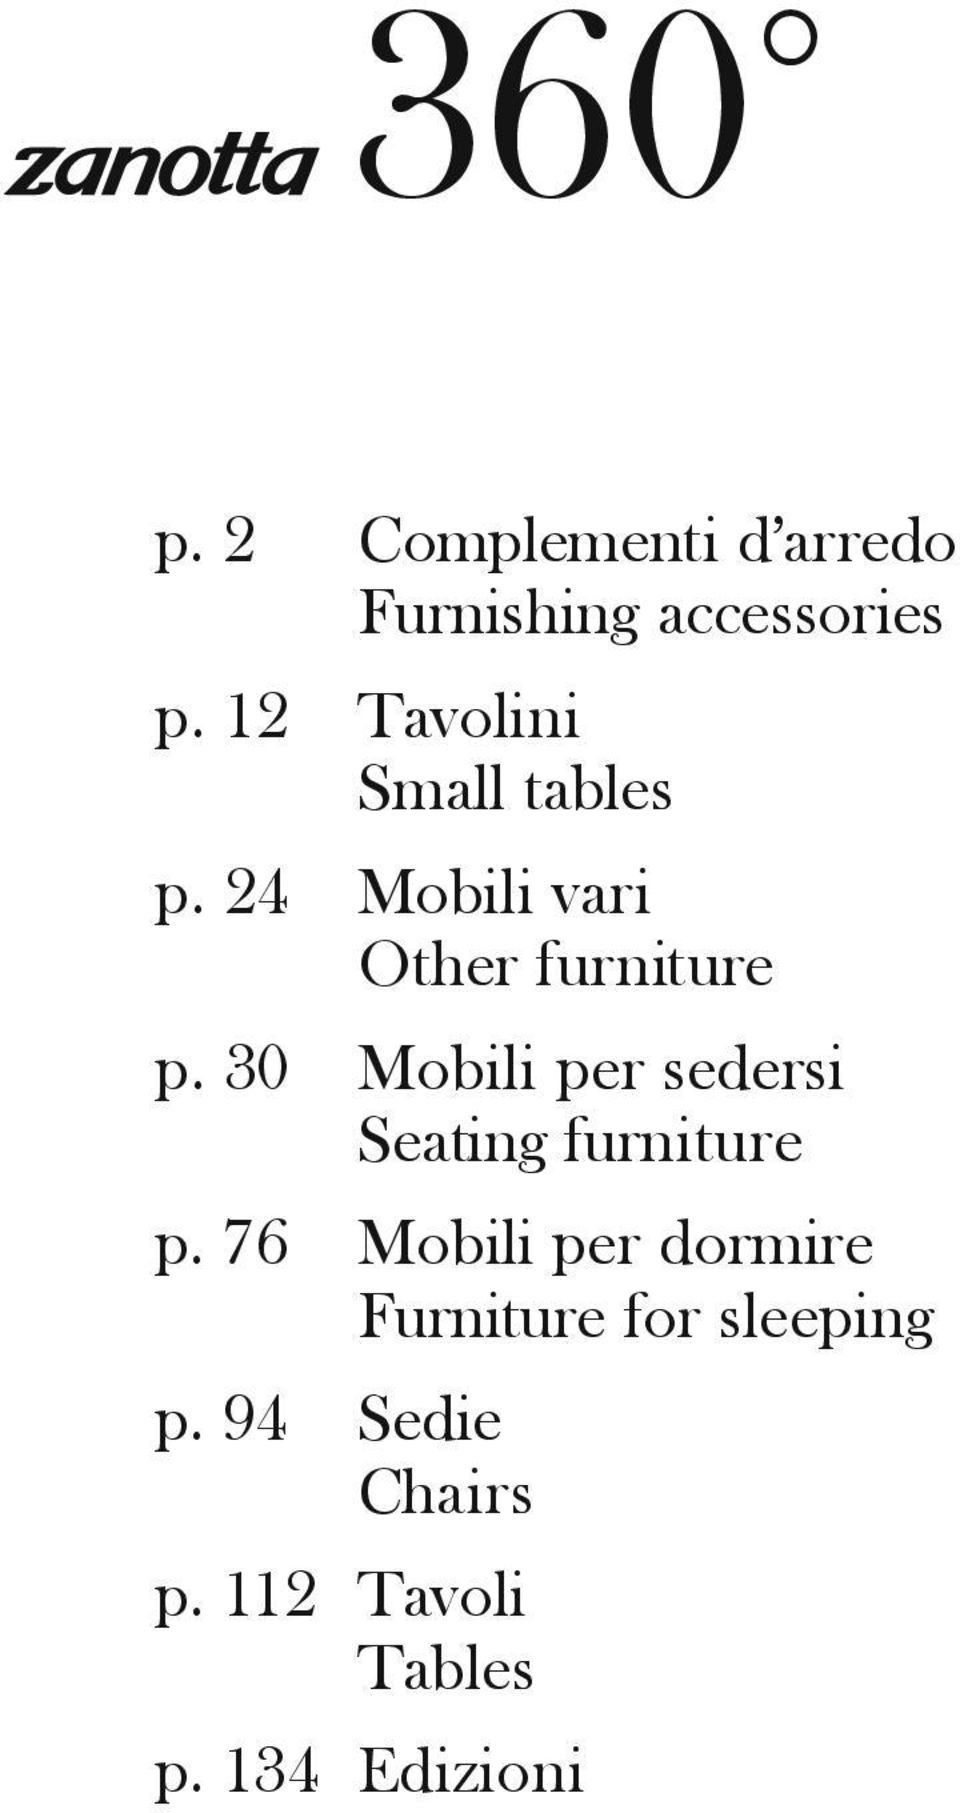 tables Mobili vari Other furniture Mobili per sedersi Seating